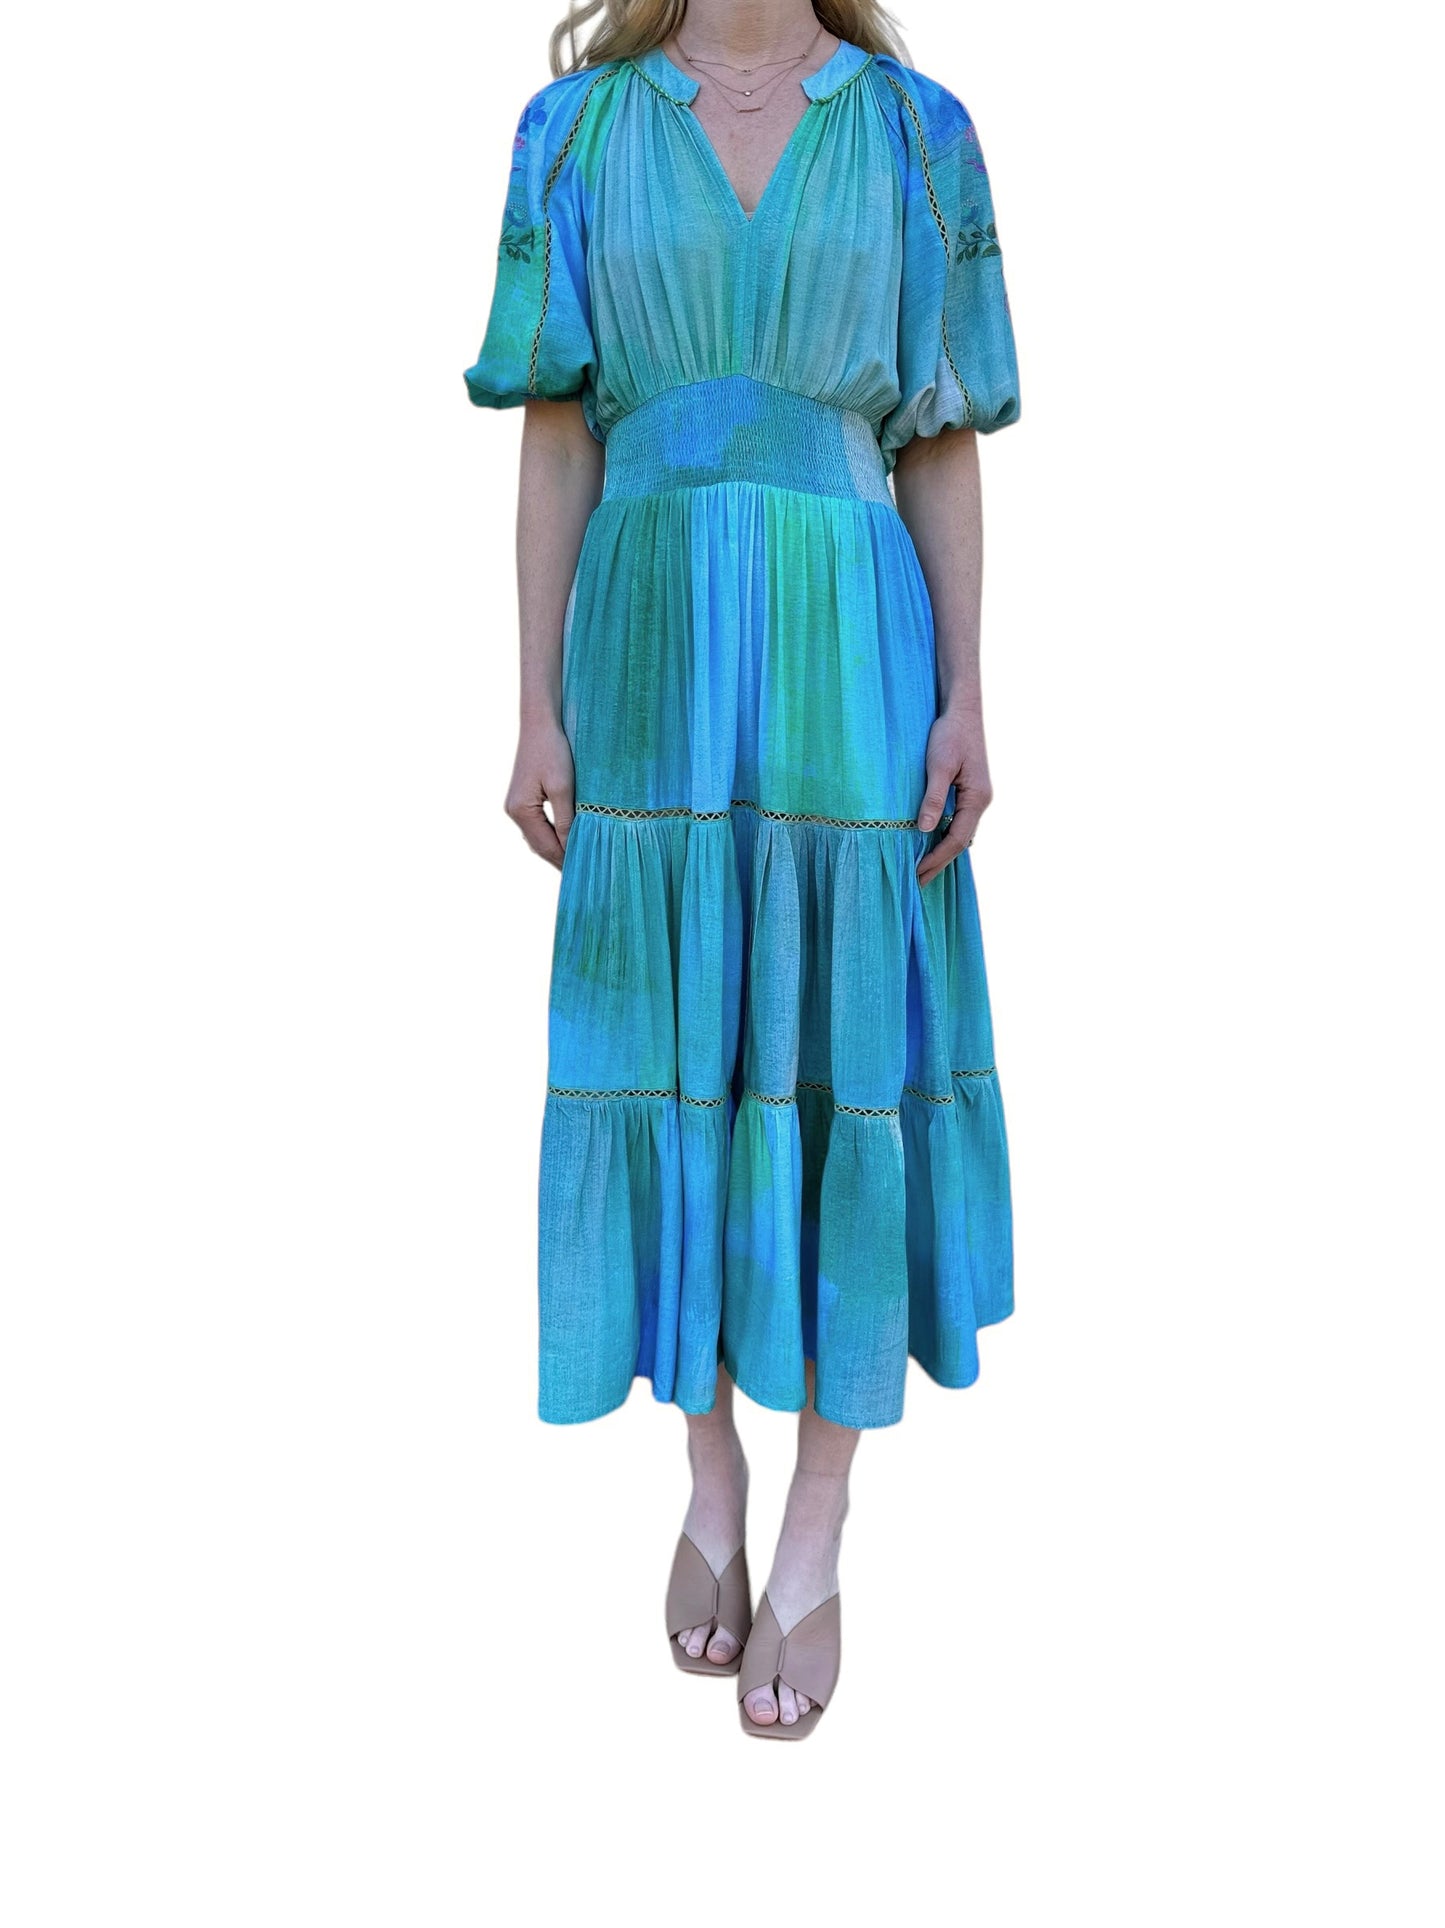 Brigitta Dress in blue/green by Blank